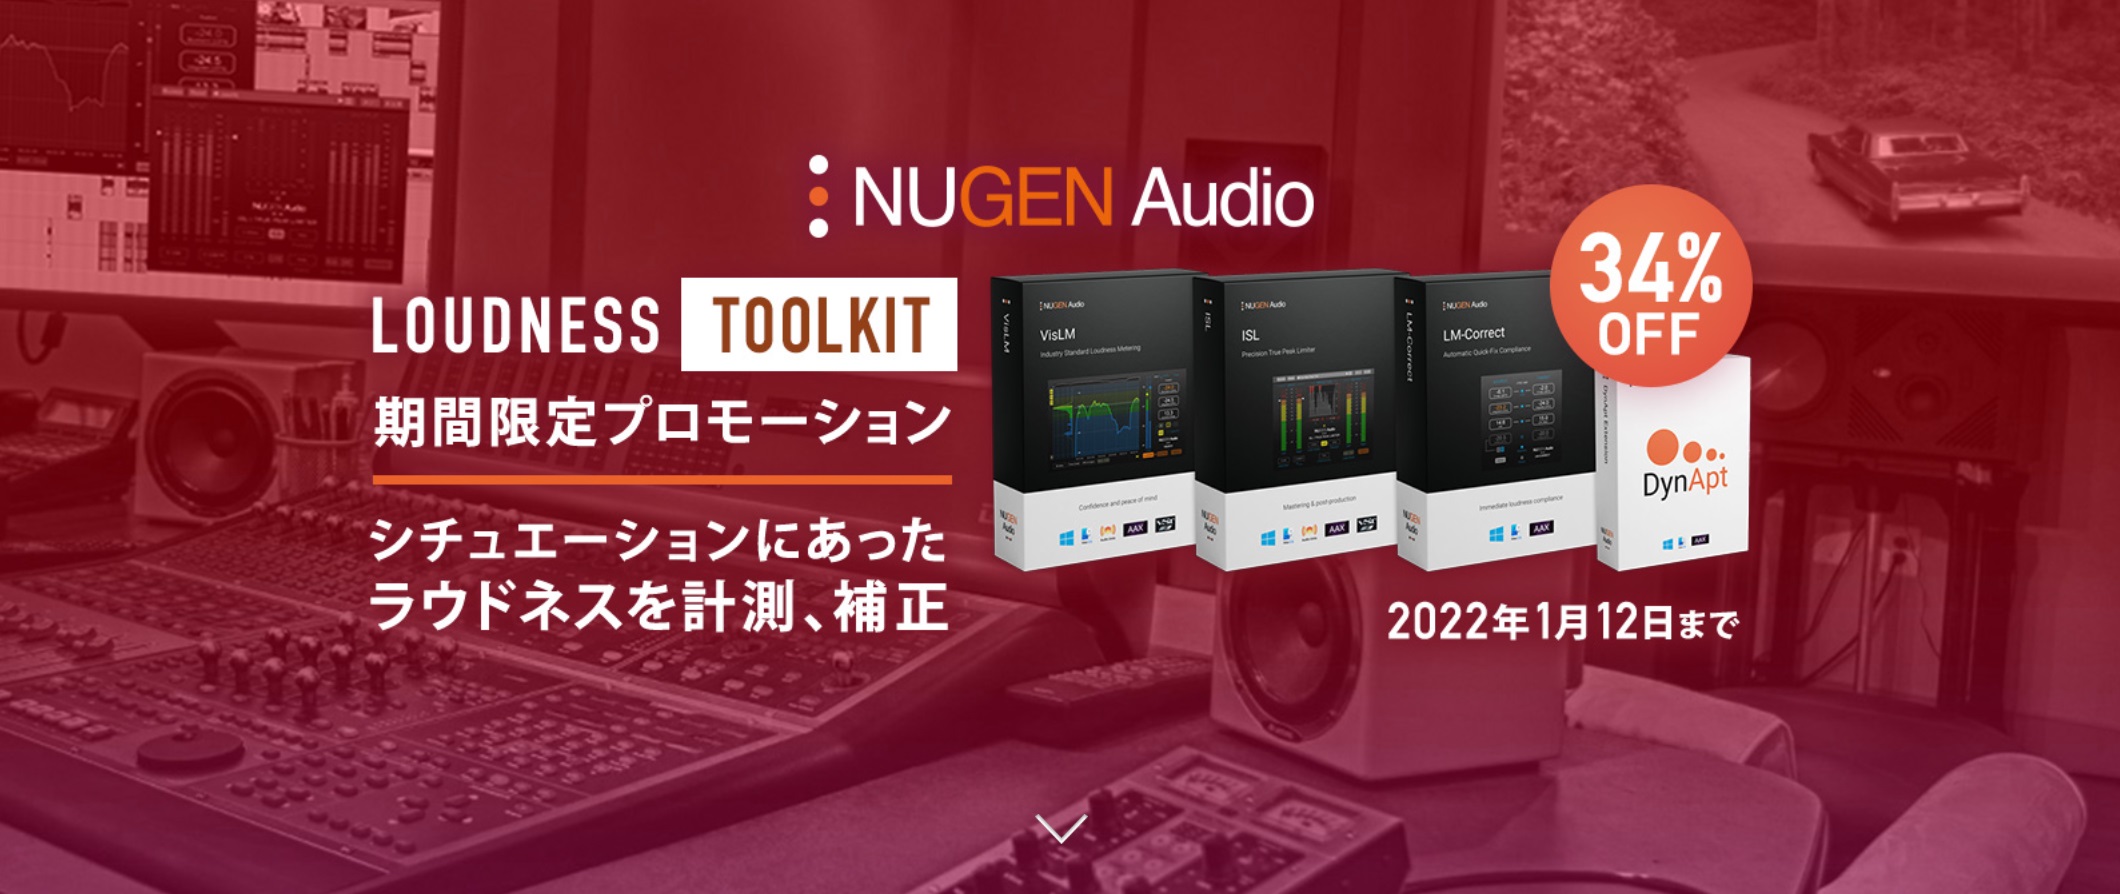 *NuGen Audio Loudness Toolkit 期間限定プロモーション 2021 ***Nugen Audio Loudness Toolkitとは 製作者の意図が伝わるダイナミクス感を失う事なく、ラウドネスのコンプライアンスに適合させるには、ツールの正確さはもちろんのこと、優れた視認性 […]